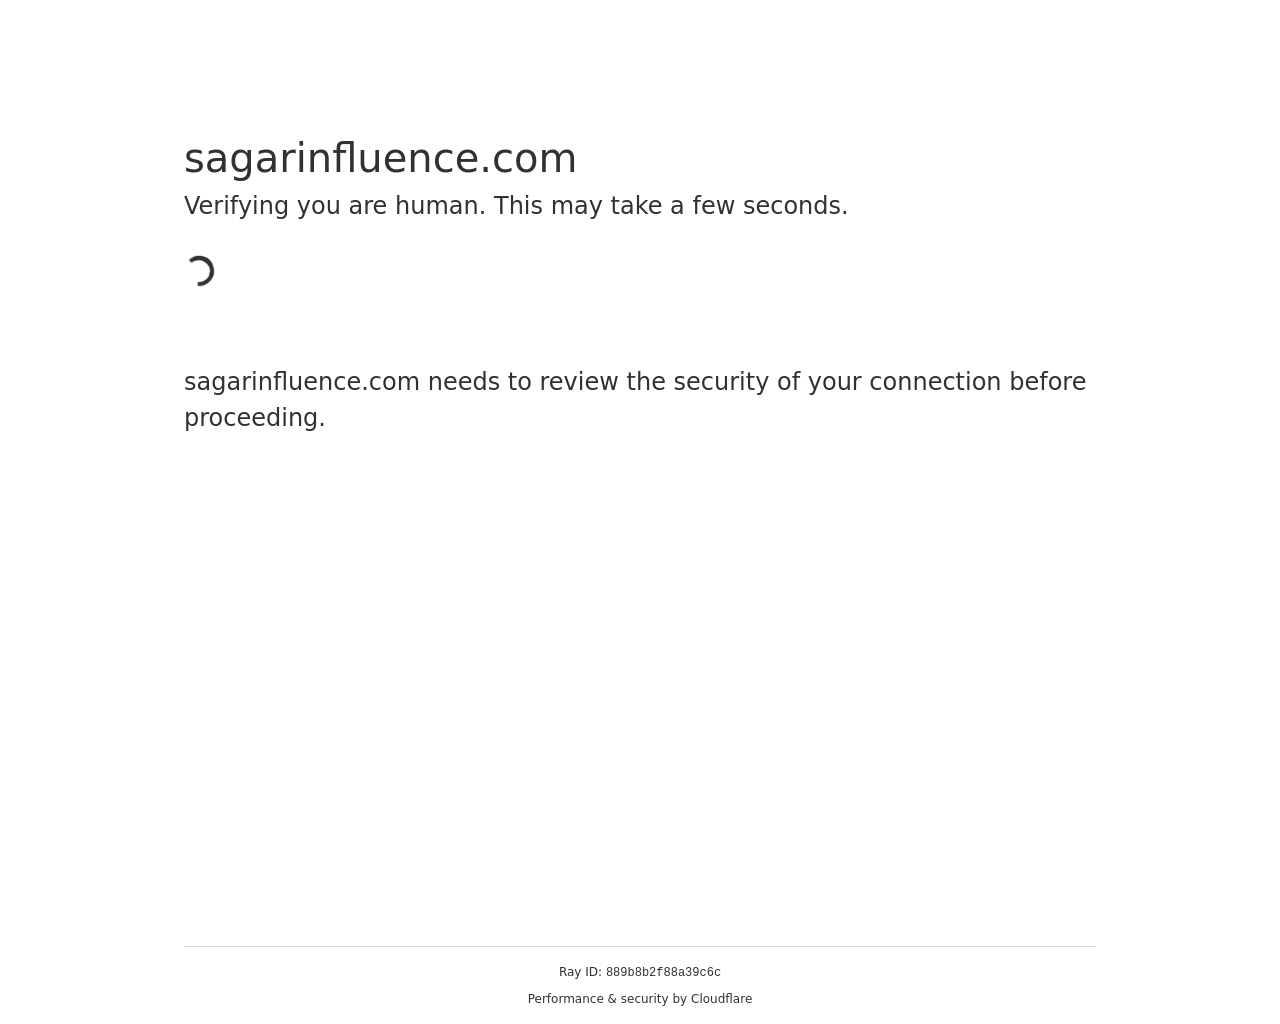 sagarinfluence.com